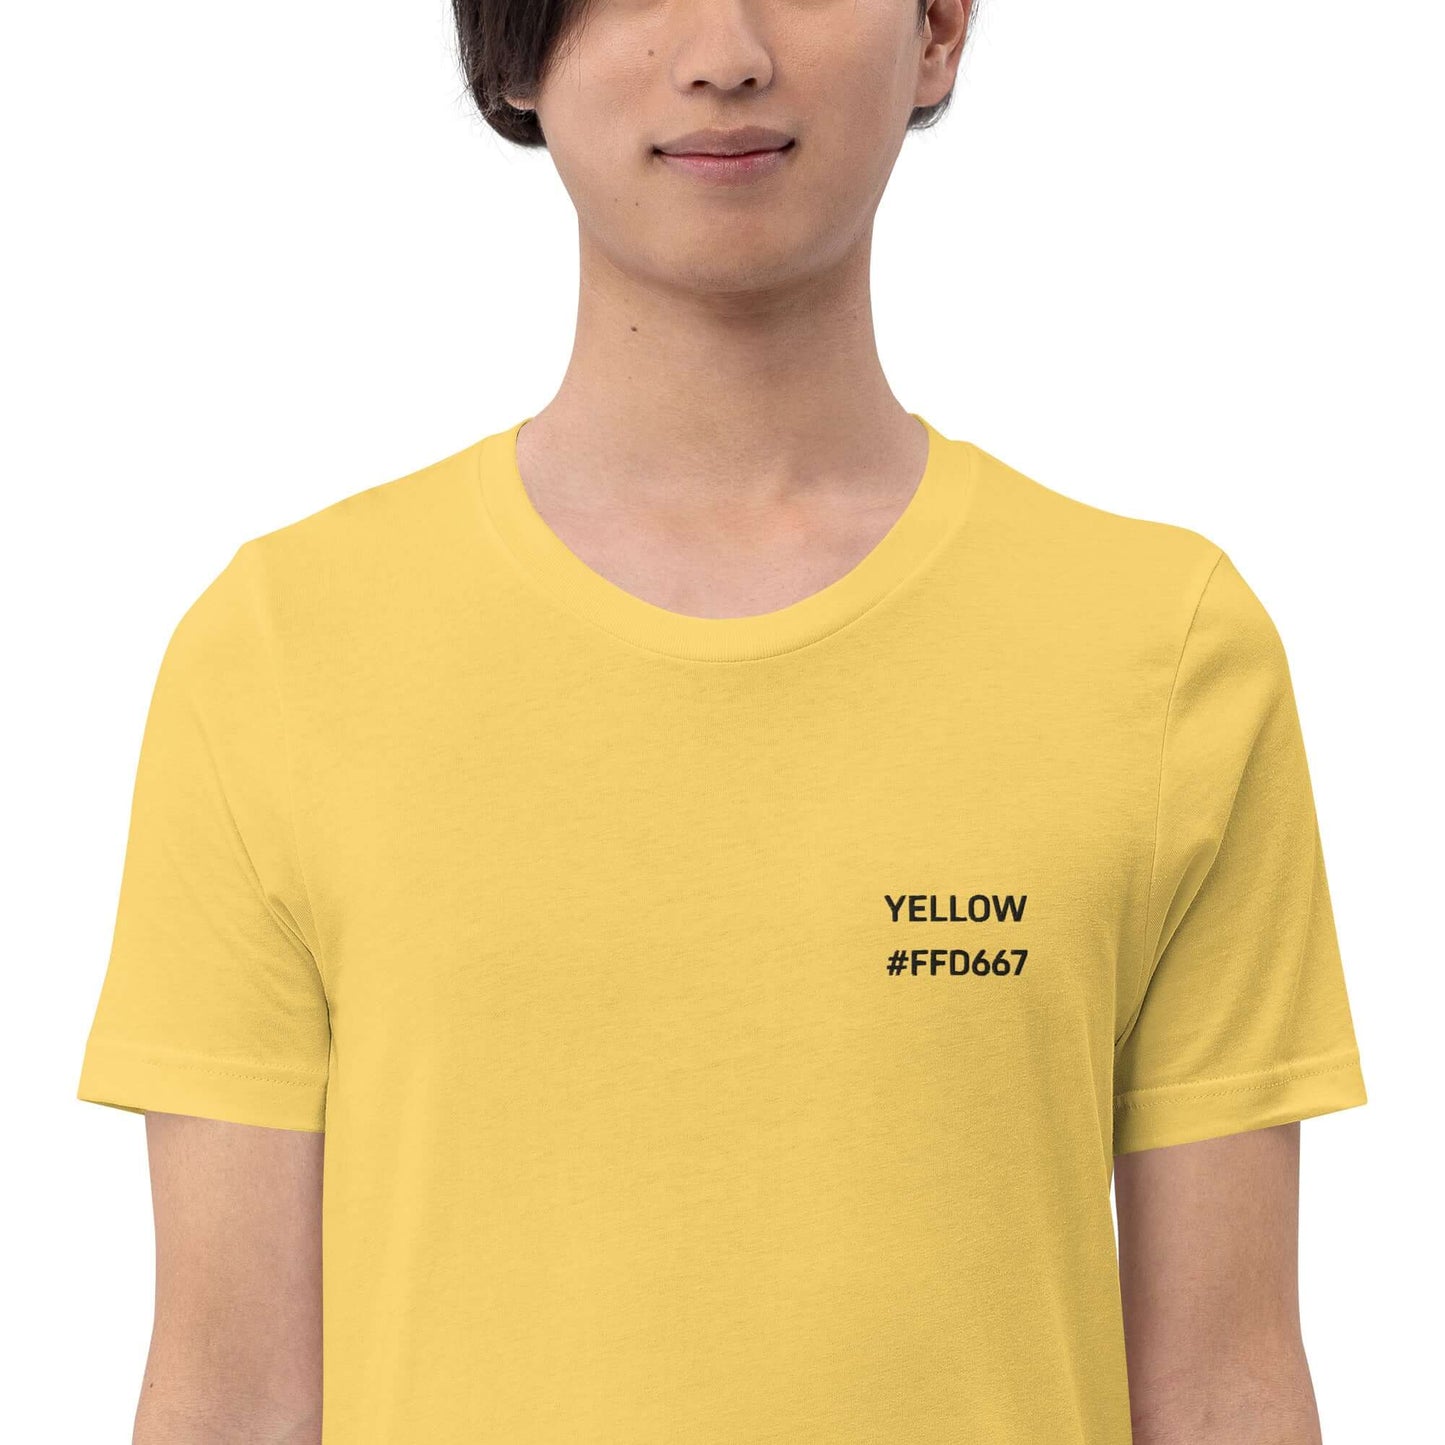 OKKL YELLOW #FFD667: Unisex T-shirt